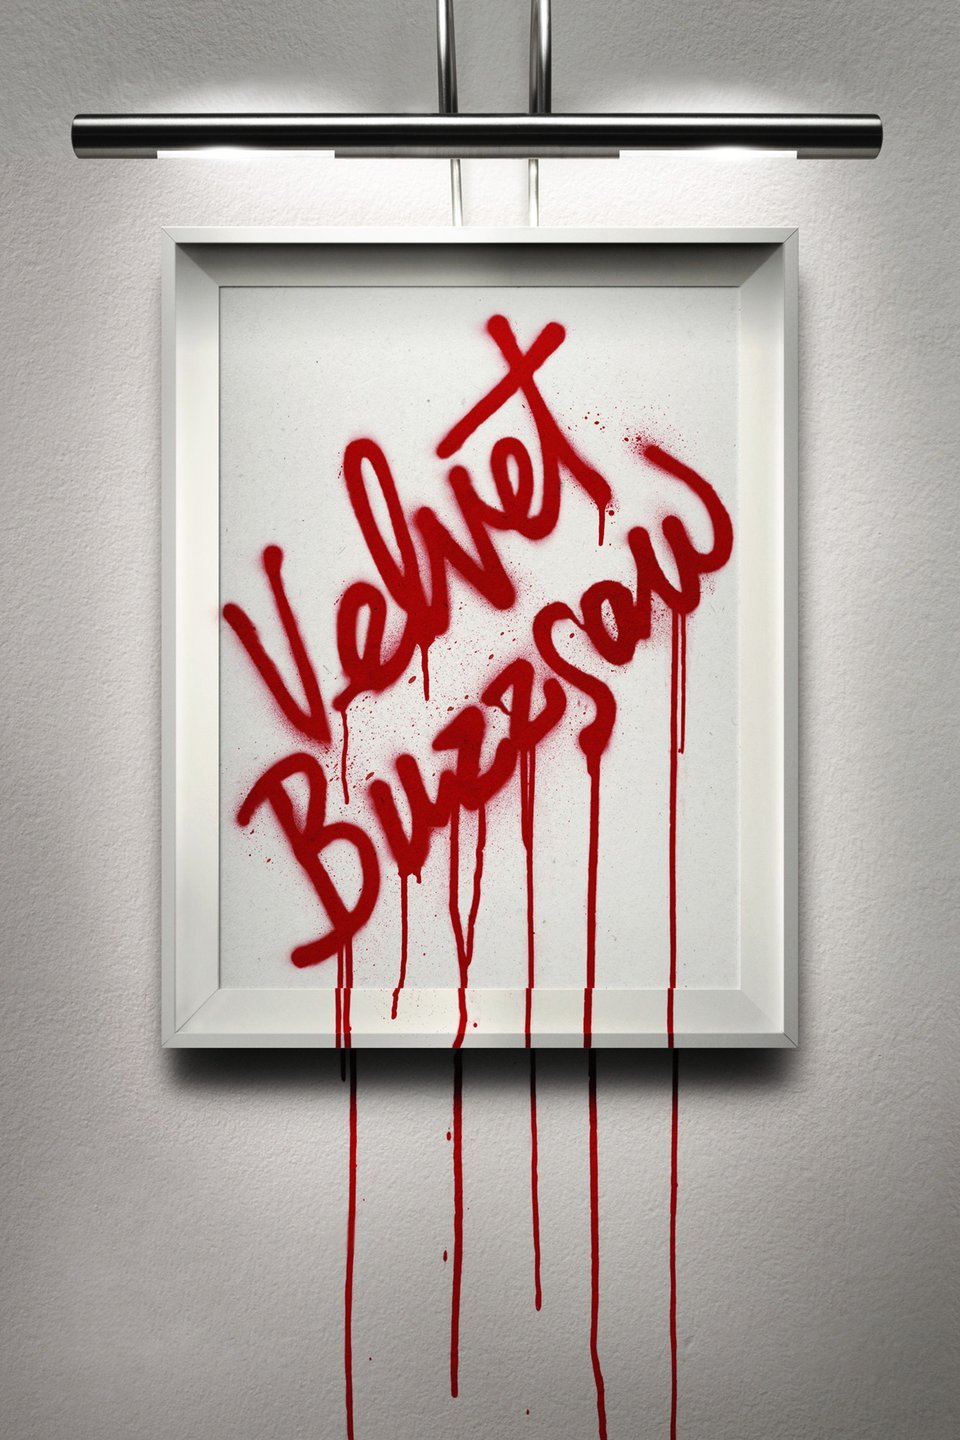 [ฝรั่ง] Velvet Buzzsaw (2019) เวลเว็ท บัซซอว์: ศิลปะเลือด [1080p] [พากย์อังกฤษ 5.1] [บรรยายไทย + อังกฤษ] [เสียงอังกฤษ + ซับไทย] [OPENLOAD]